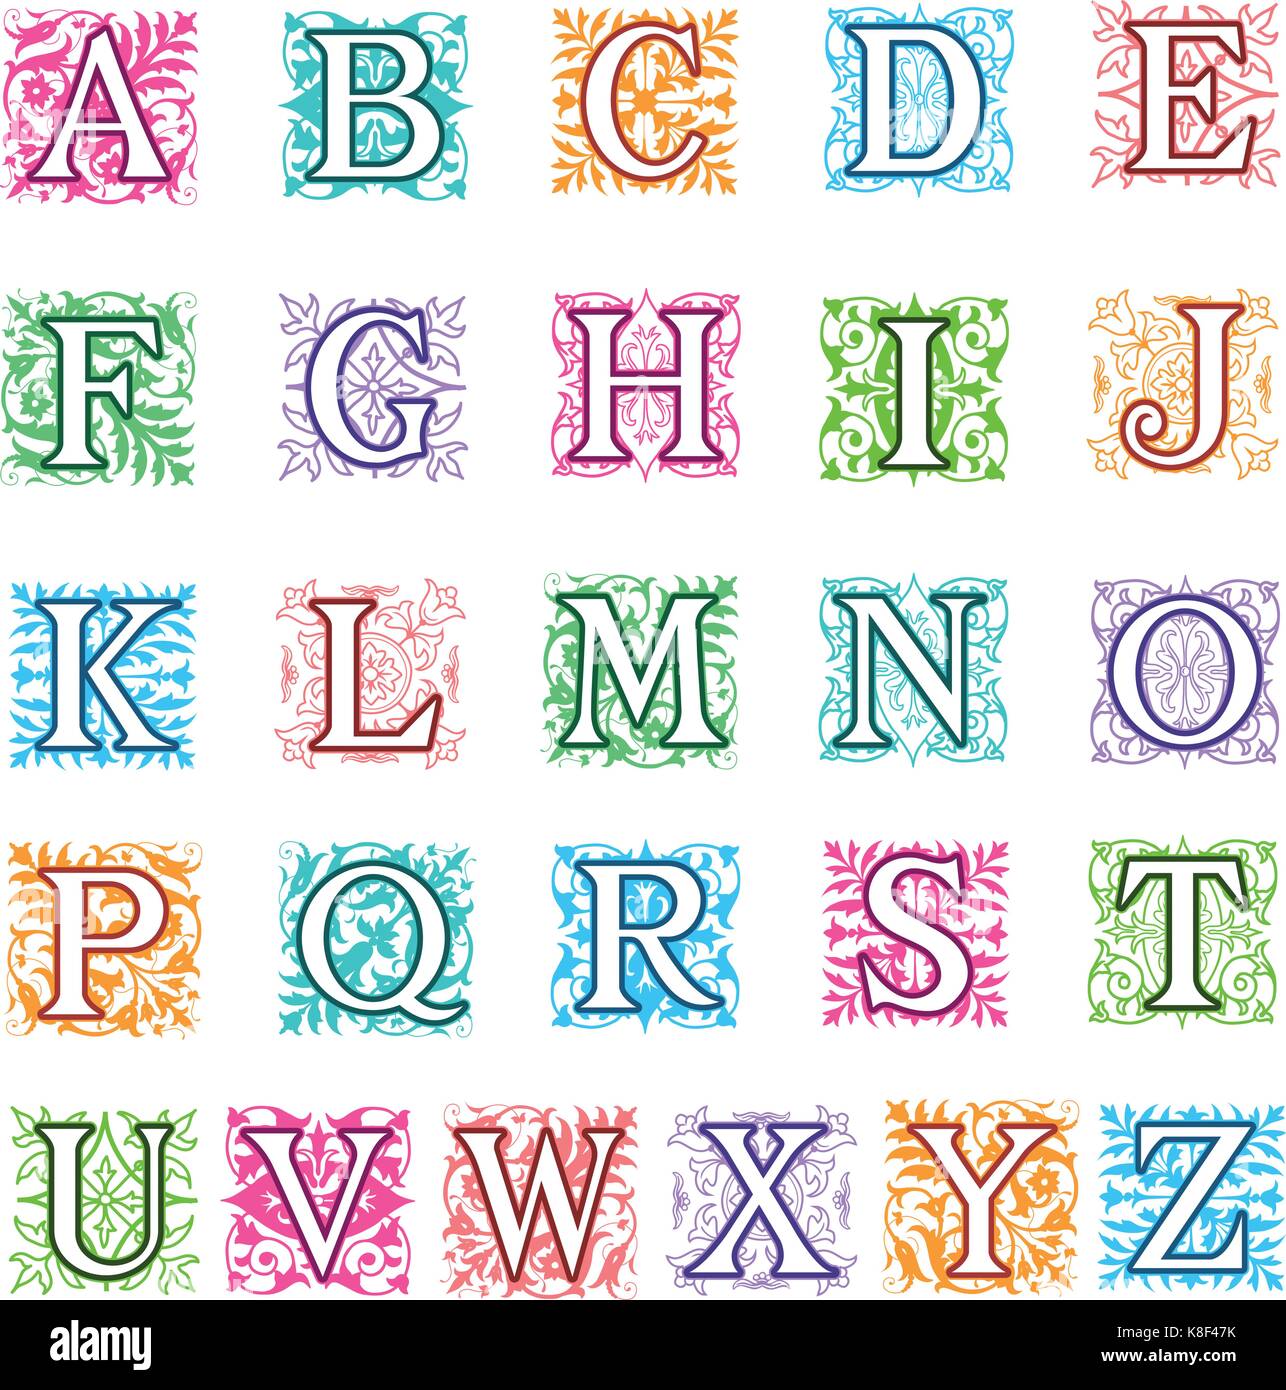 Colorata illustrazione vettoriale di un set completo di alfabeto lettere in maiuscolo con formato quadrato di decorazione ornamentale dietro ogni lettera maiuscola in Illustrazione Vettoriale